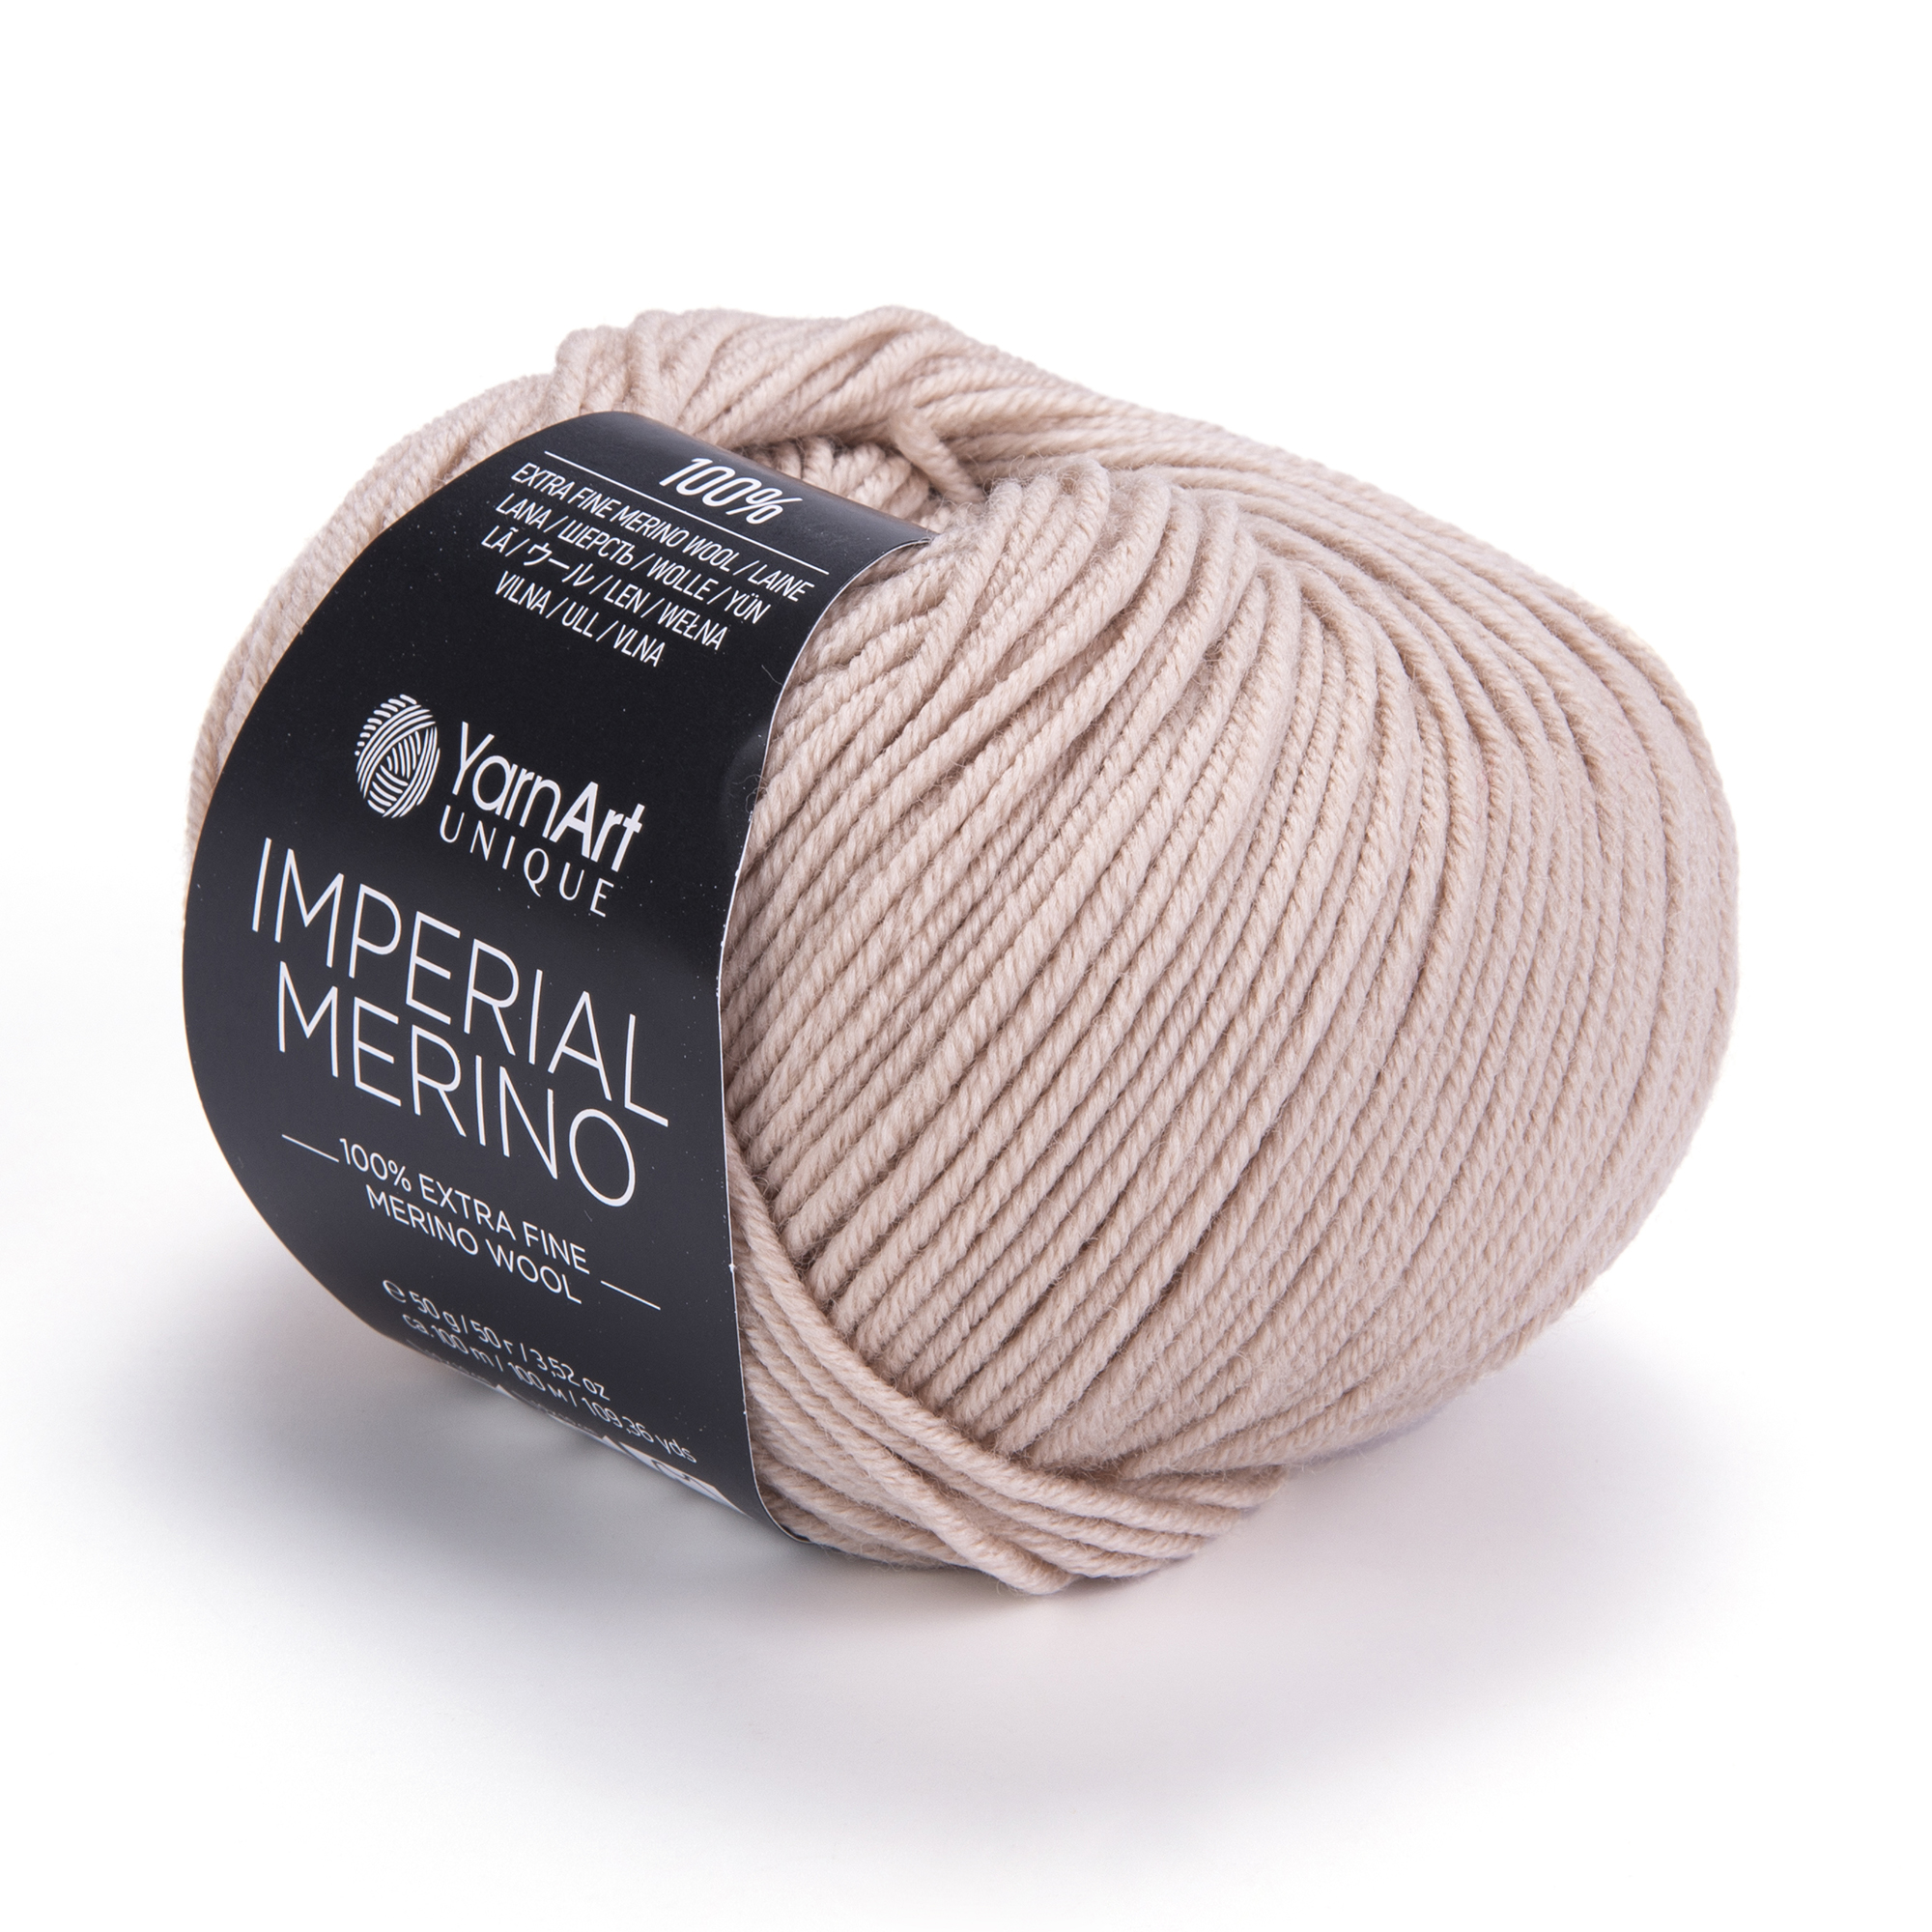 Imperial Merino – 3306